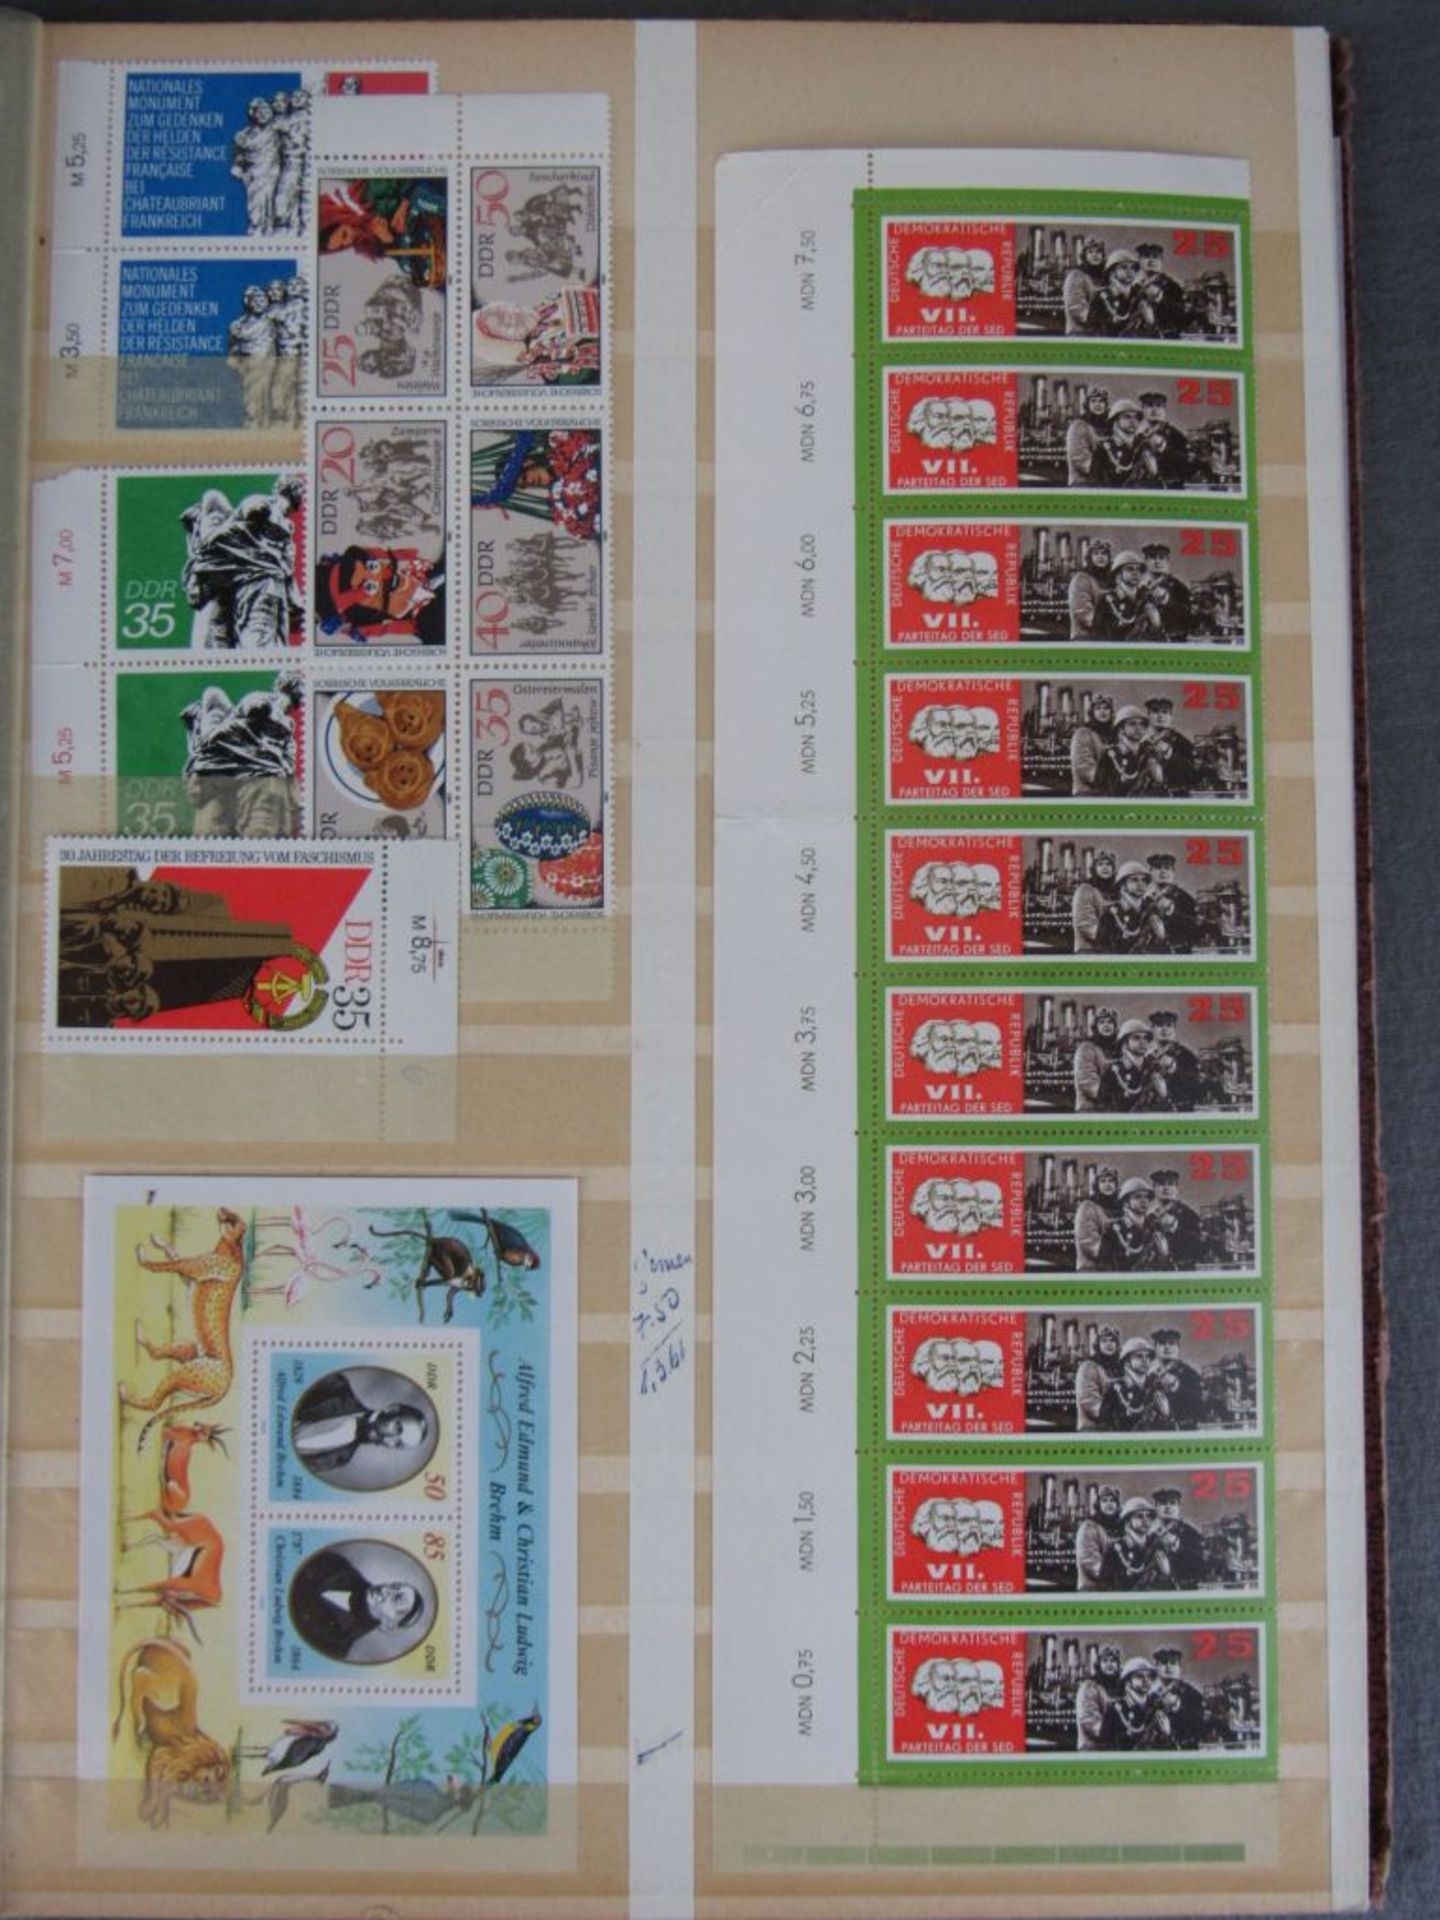 Karton Deutschland von AD - 50ger Jahre für den Spezialisten, Bogenteile, Marken usw. - Bild 18 aus 18